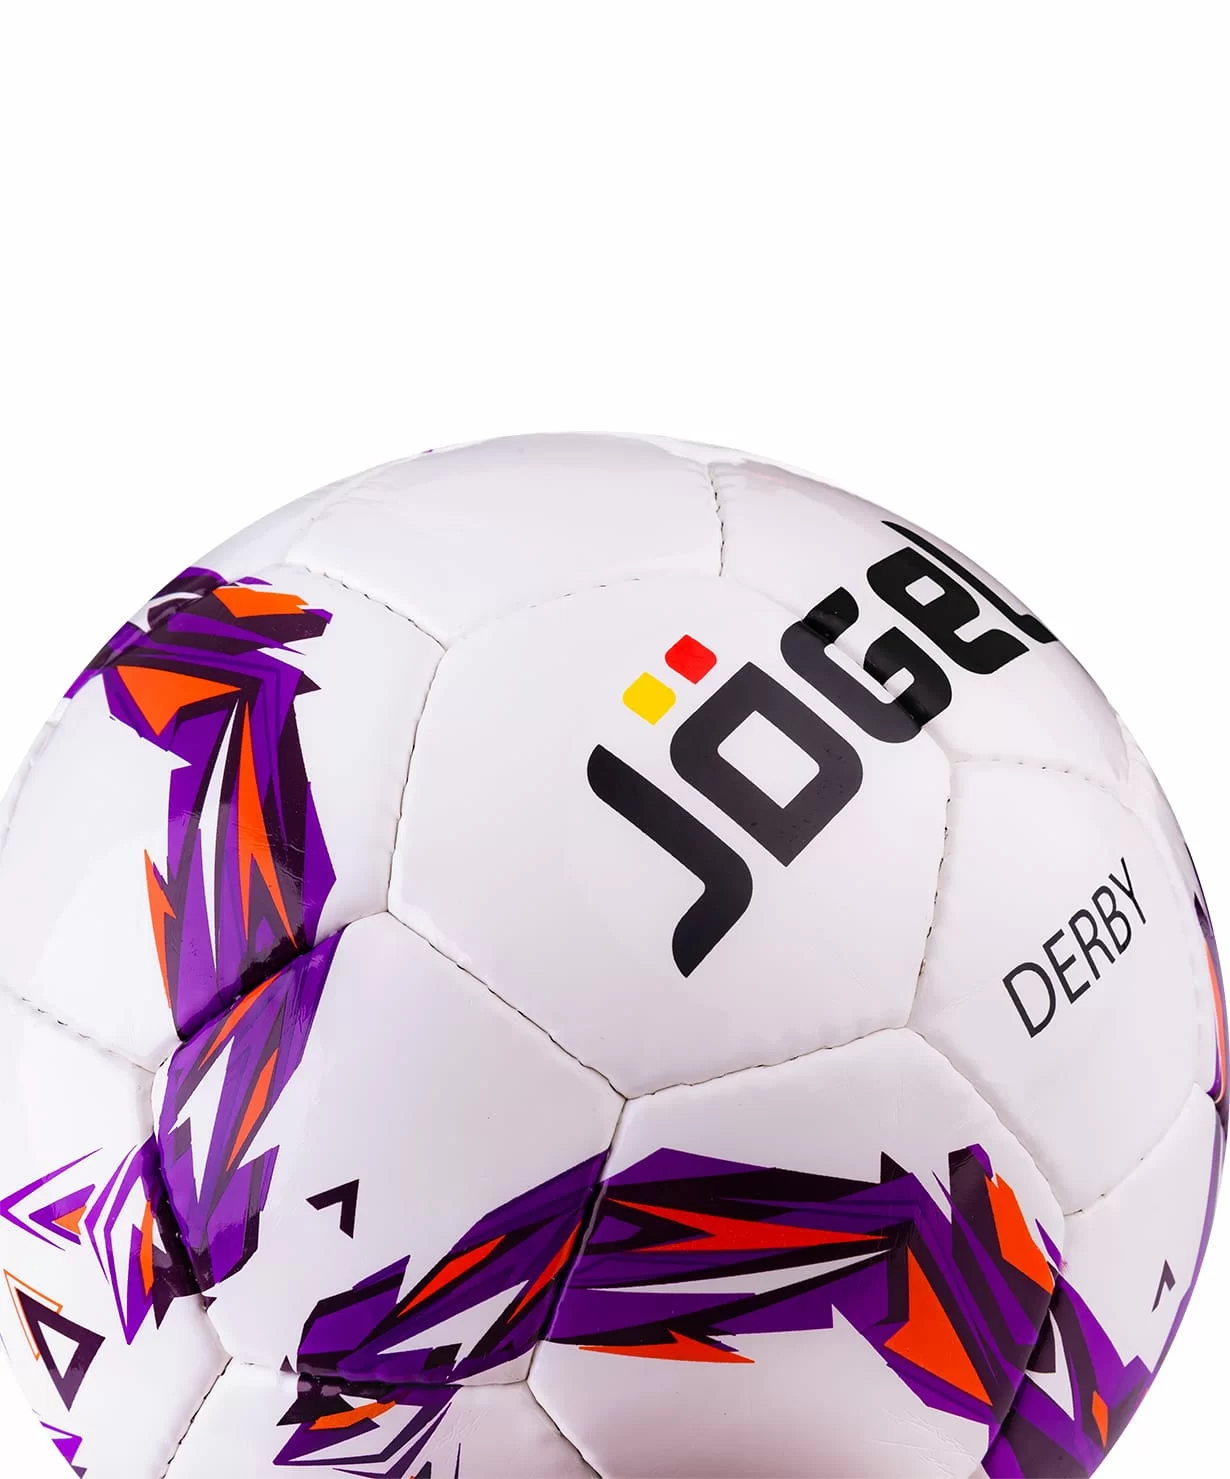 Реальное фото Мяч футбольный Jögel JS-560 Derby №4 13866 от магазина СпортСЕ